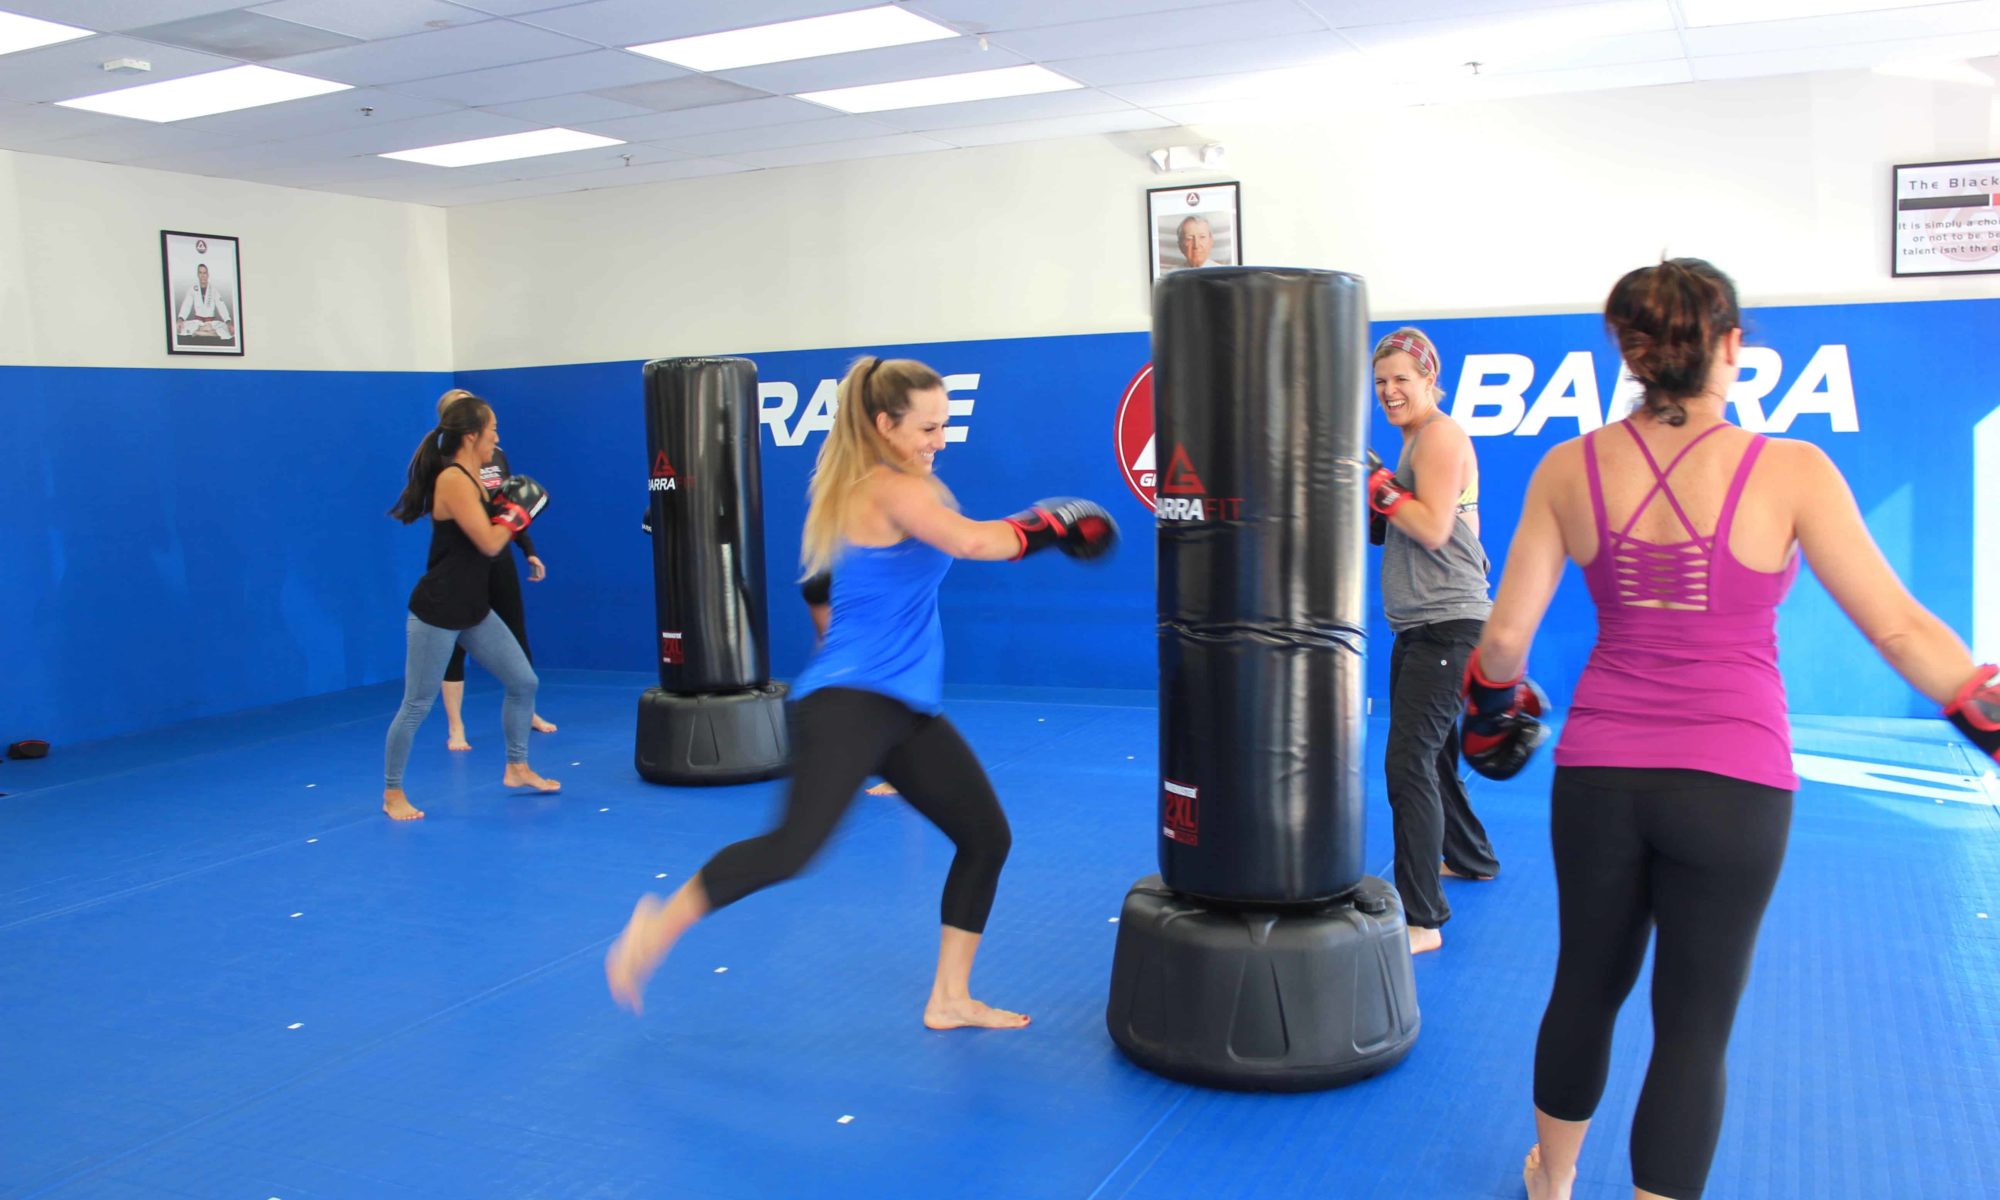 Group of women training Brazilian Jiu-Jitsu in studio